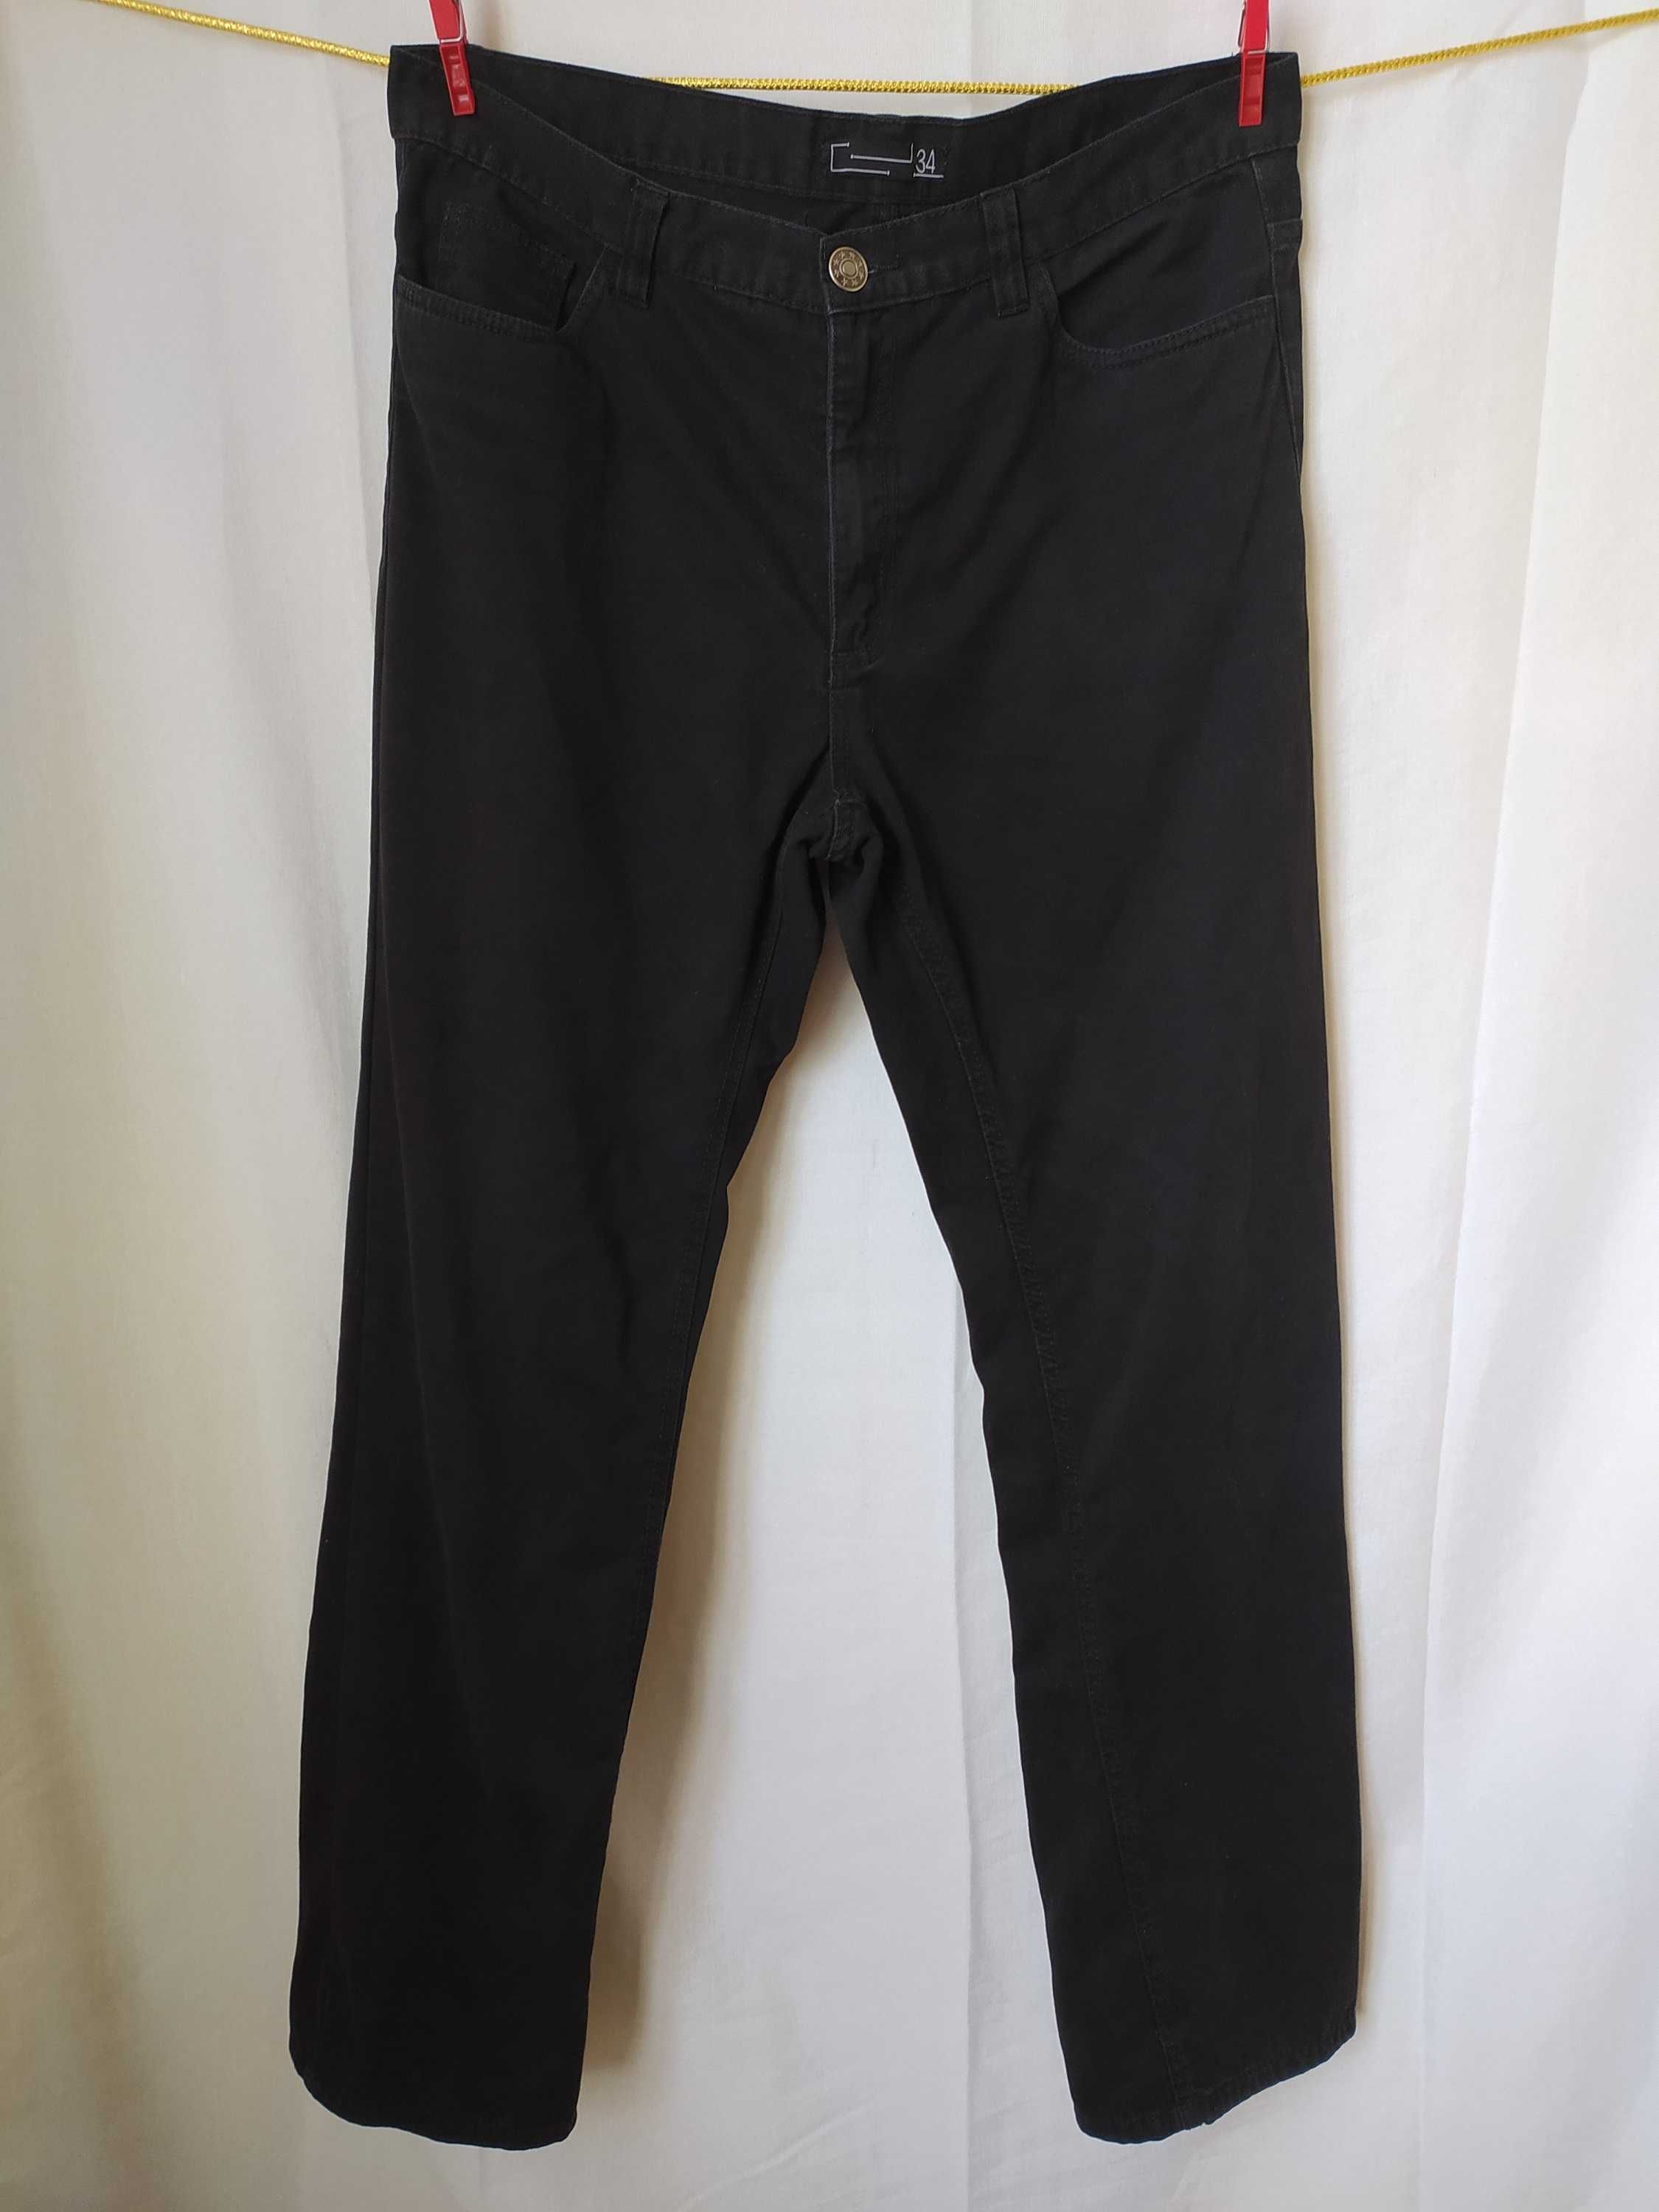 Czarne spodnie męskie 34  pas 90 cm